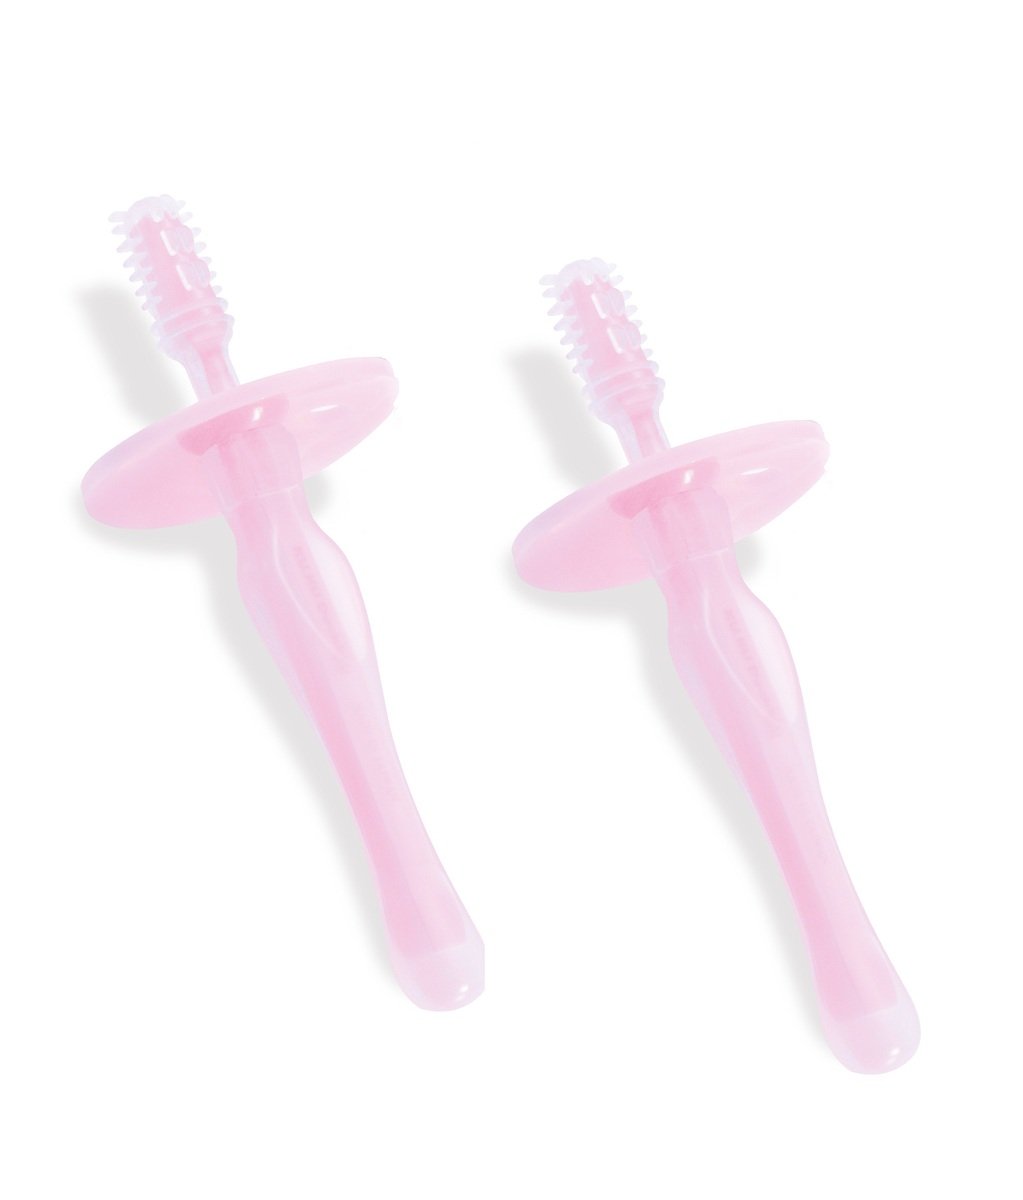 KUKU Silicone Toothbrush Set - 2 Pack/Pink